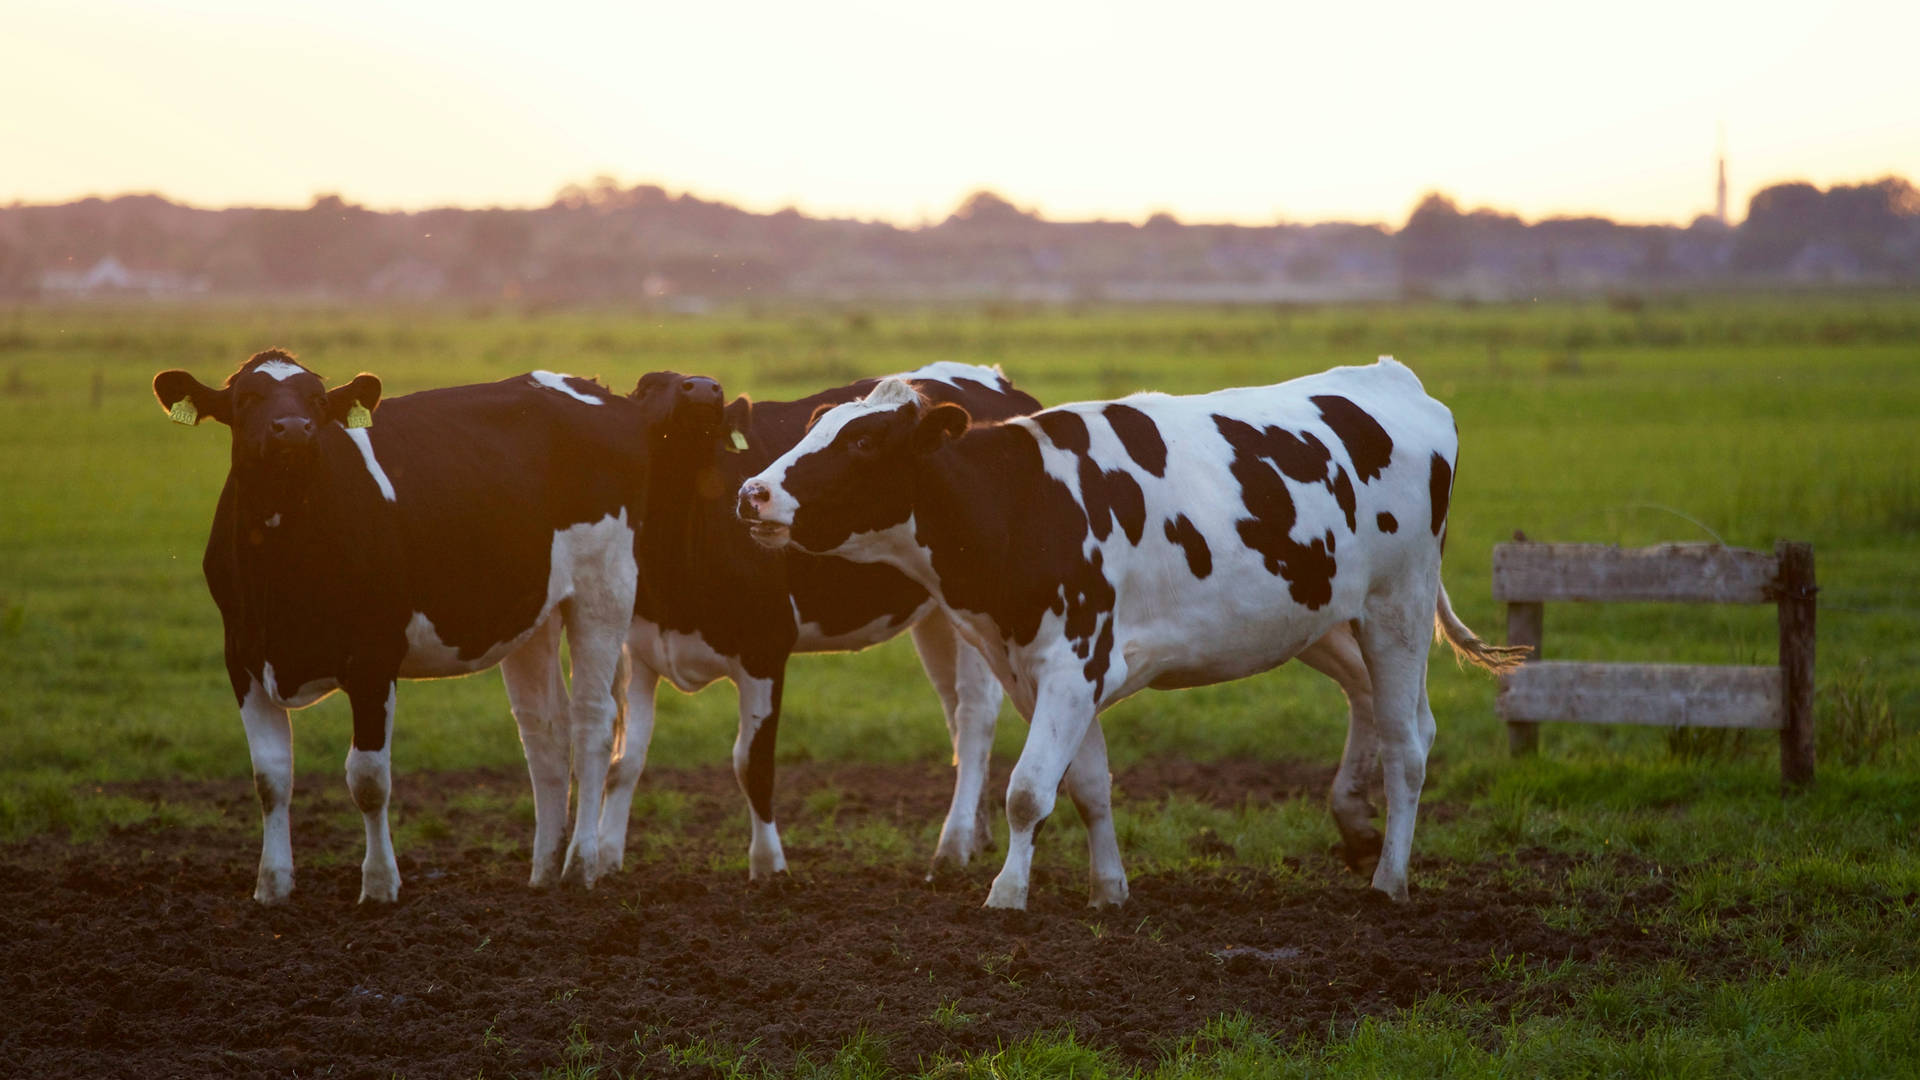 Farm Animal Cattle In The Field Wallpaper